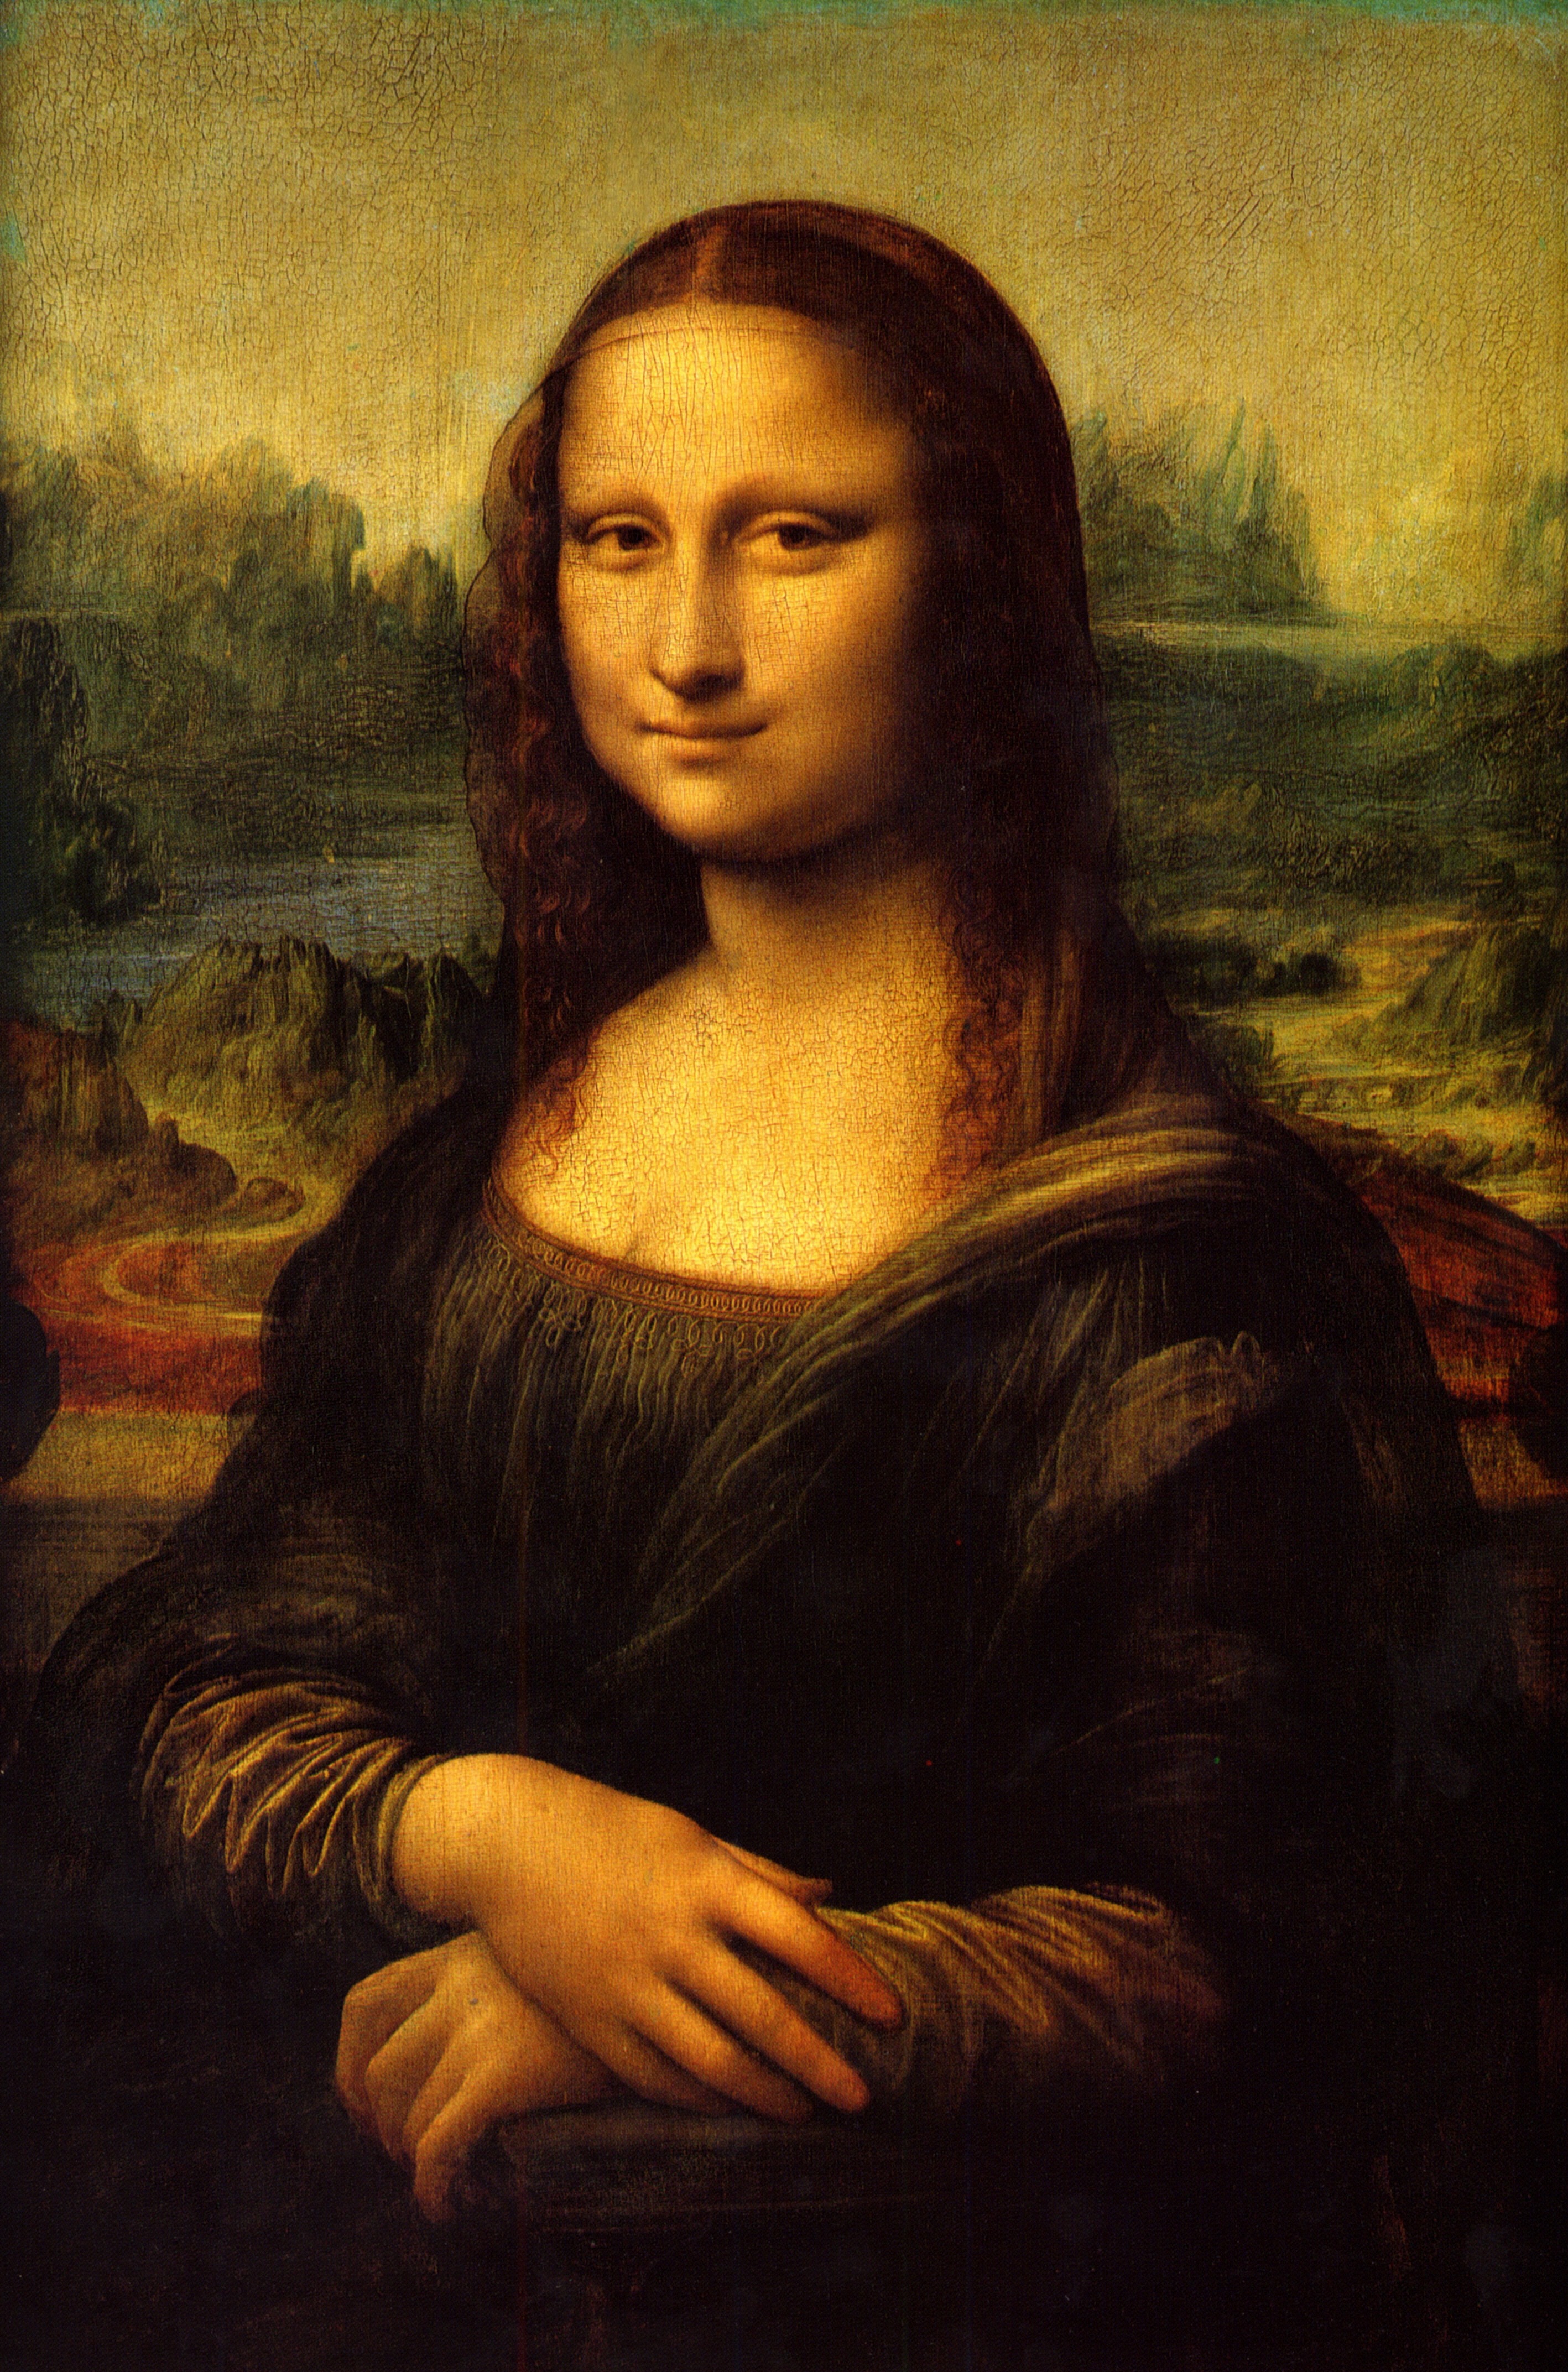 Leonardo da Vinci - Mona Lisa also known as 'La Gioconda'. Portrait of Lisa Gherardini 1504